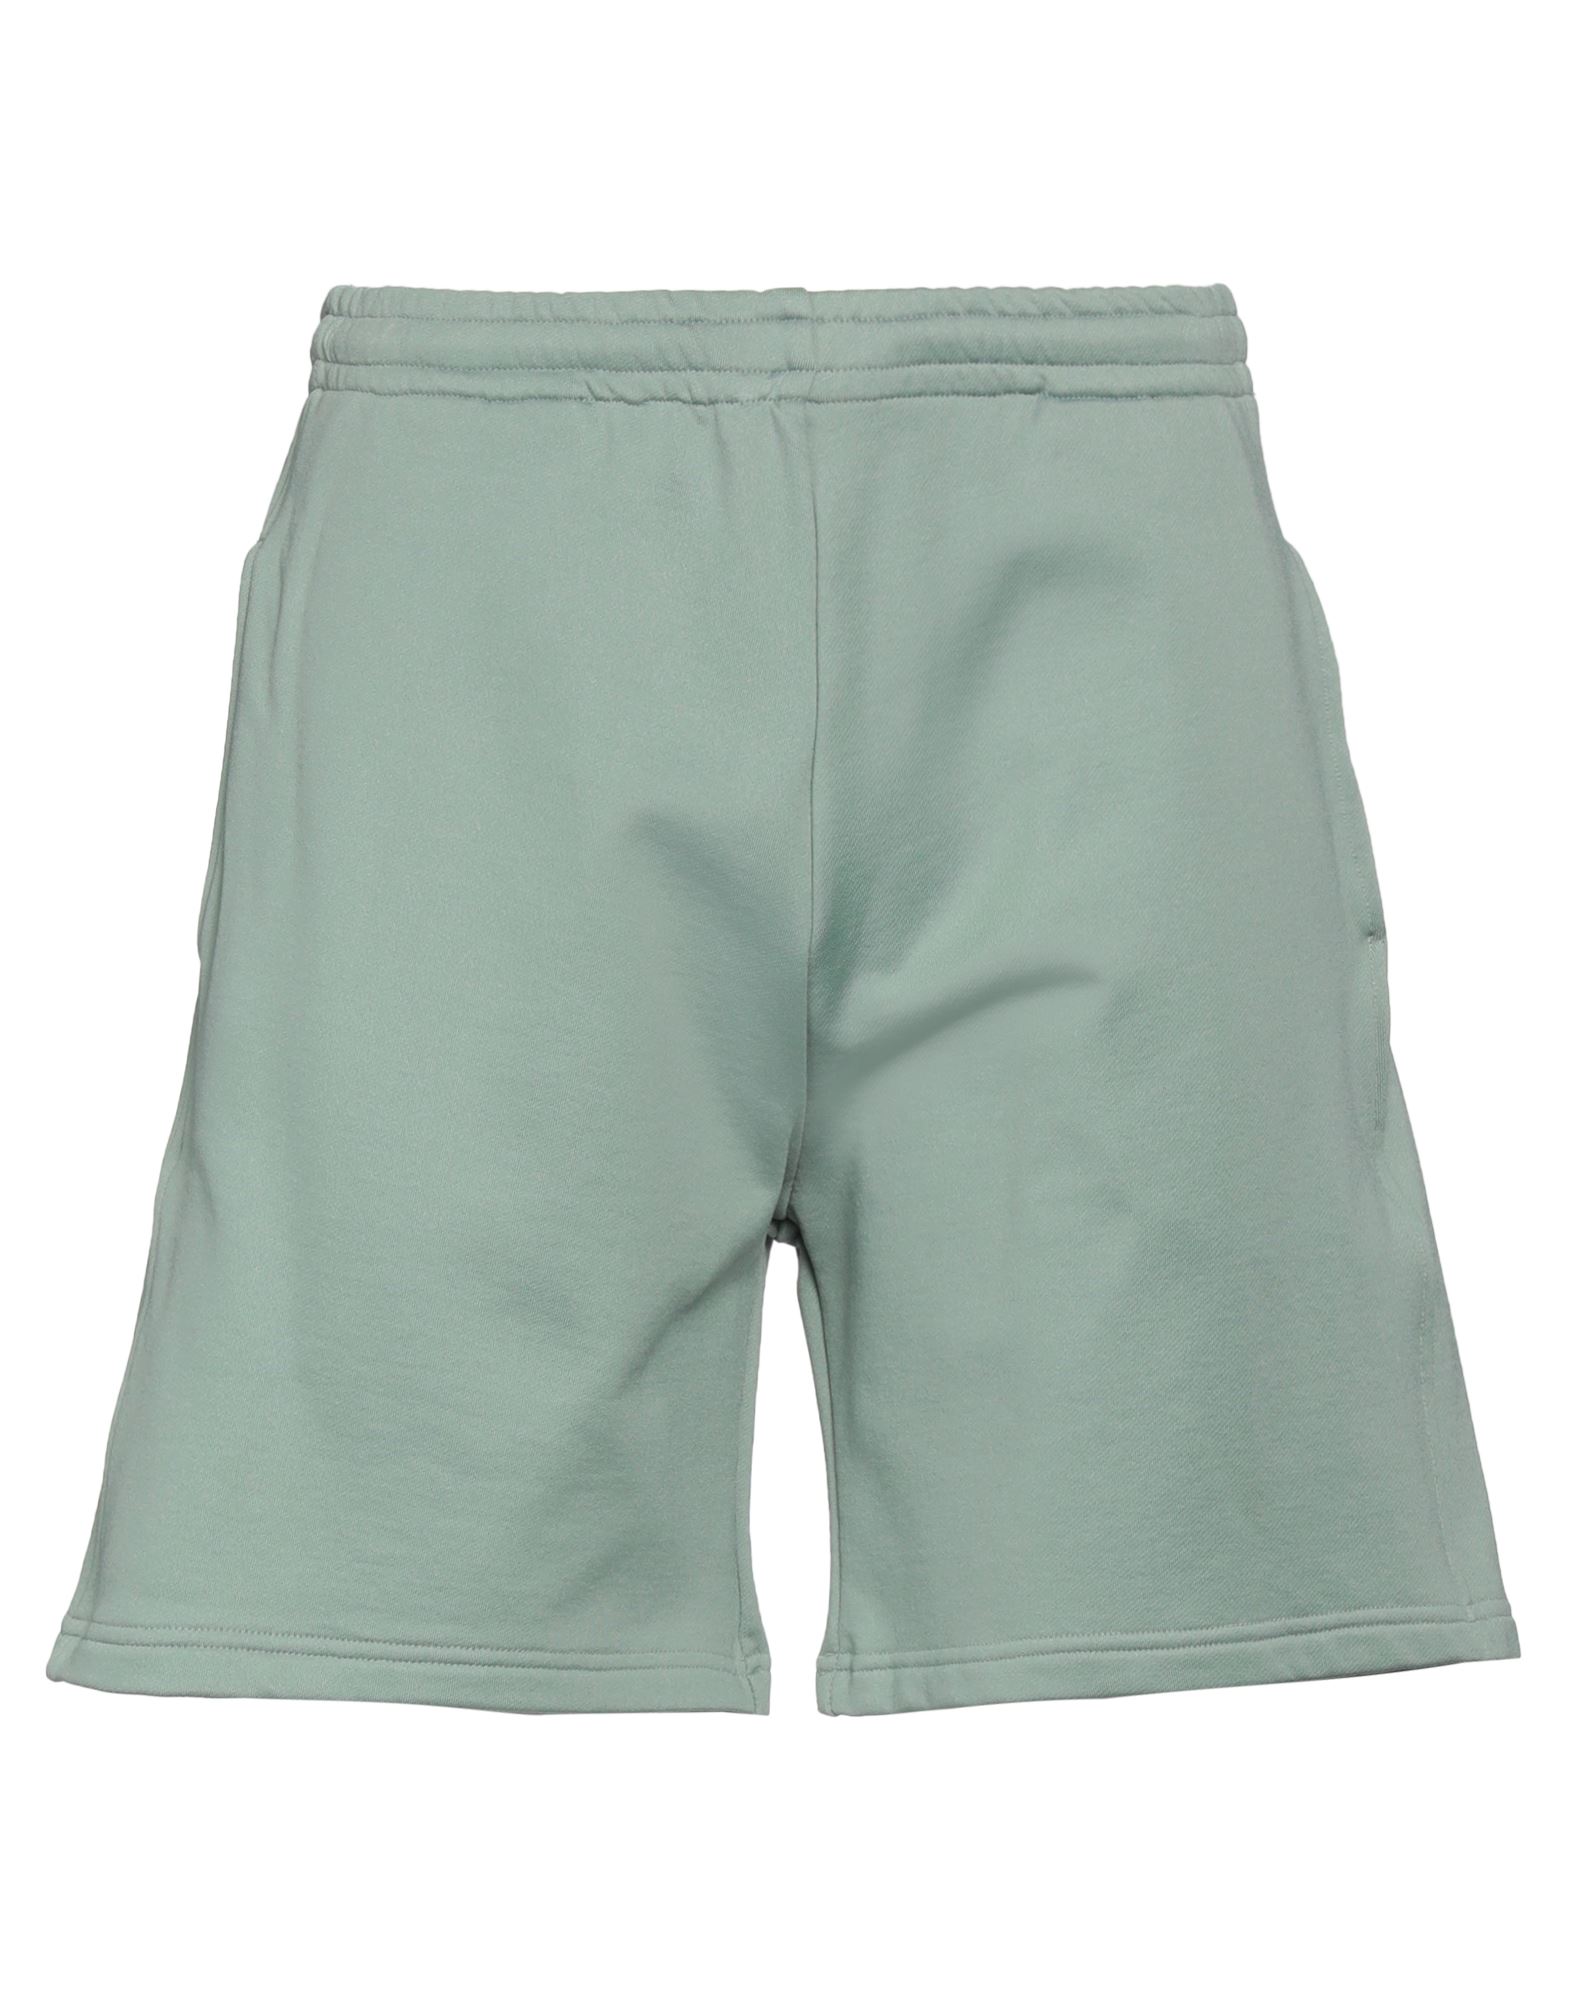 Cruna Man Shorts & Bermuda Shorts Sage Green Size M Cotton